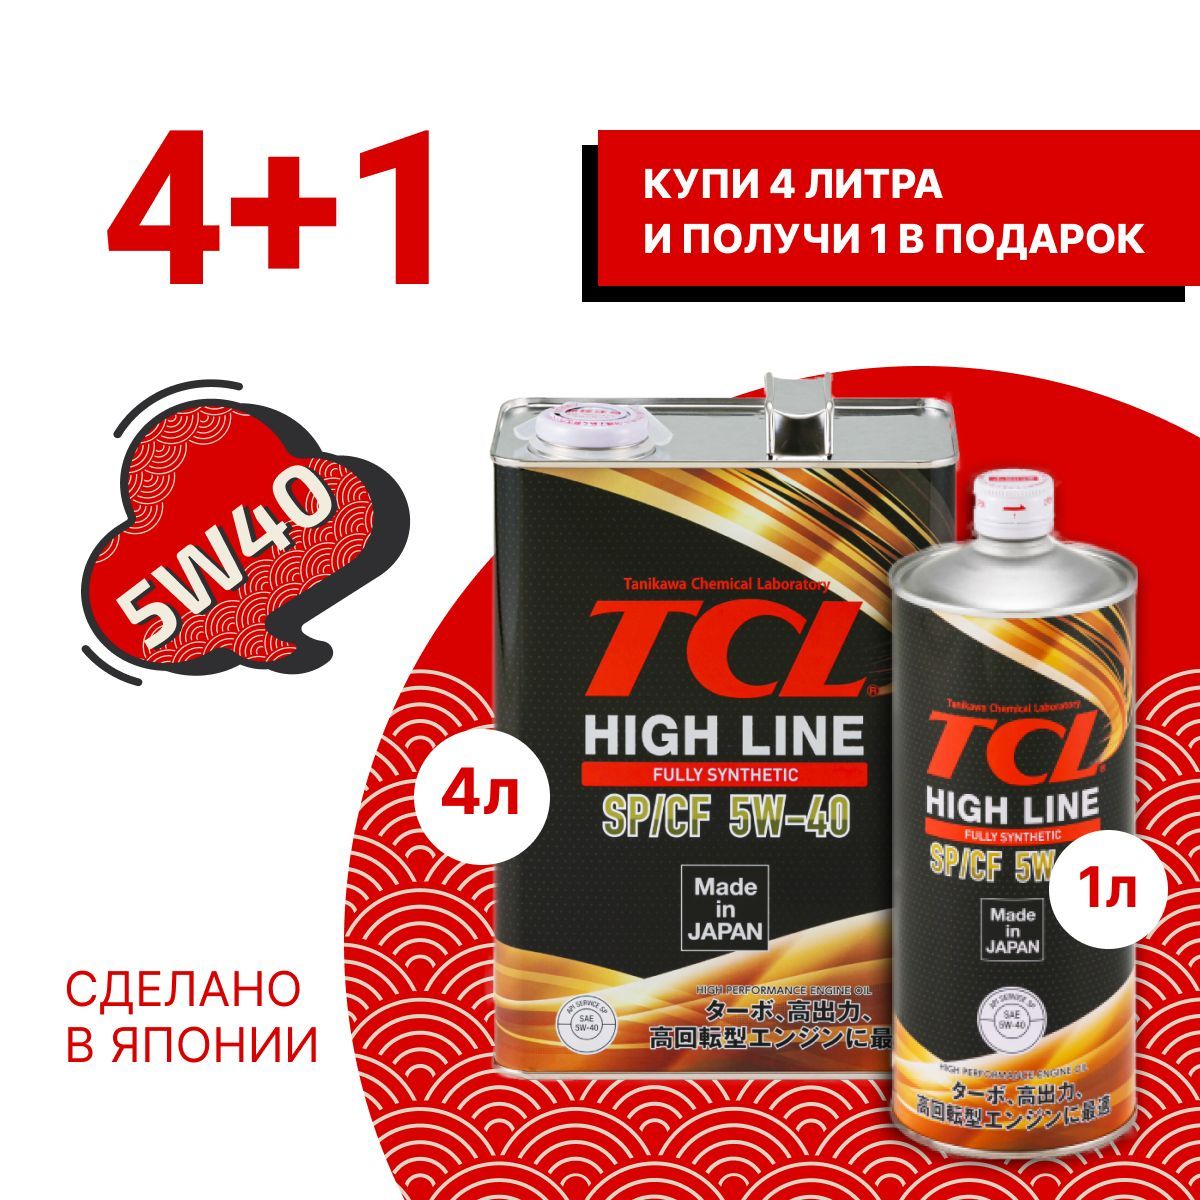 TCL 5w30 1 промо набор. TCL масло. Честный отзыв о масле ТСЛ 5 40.